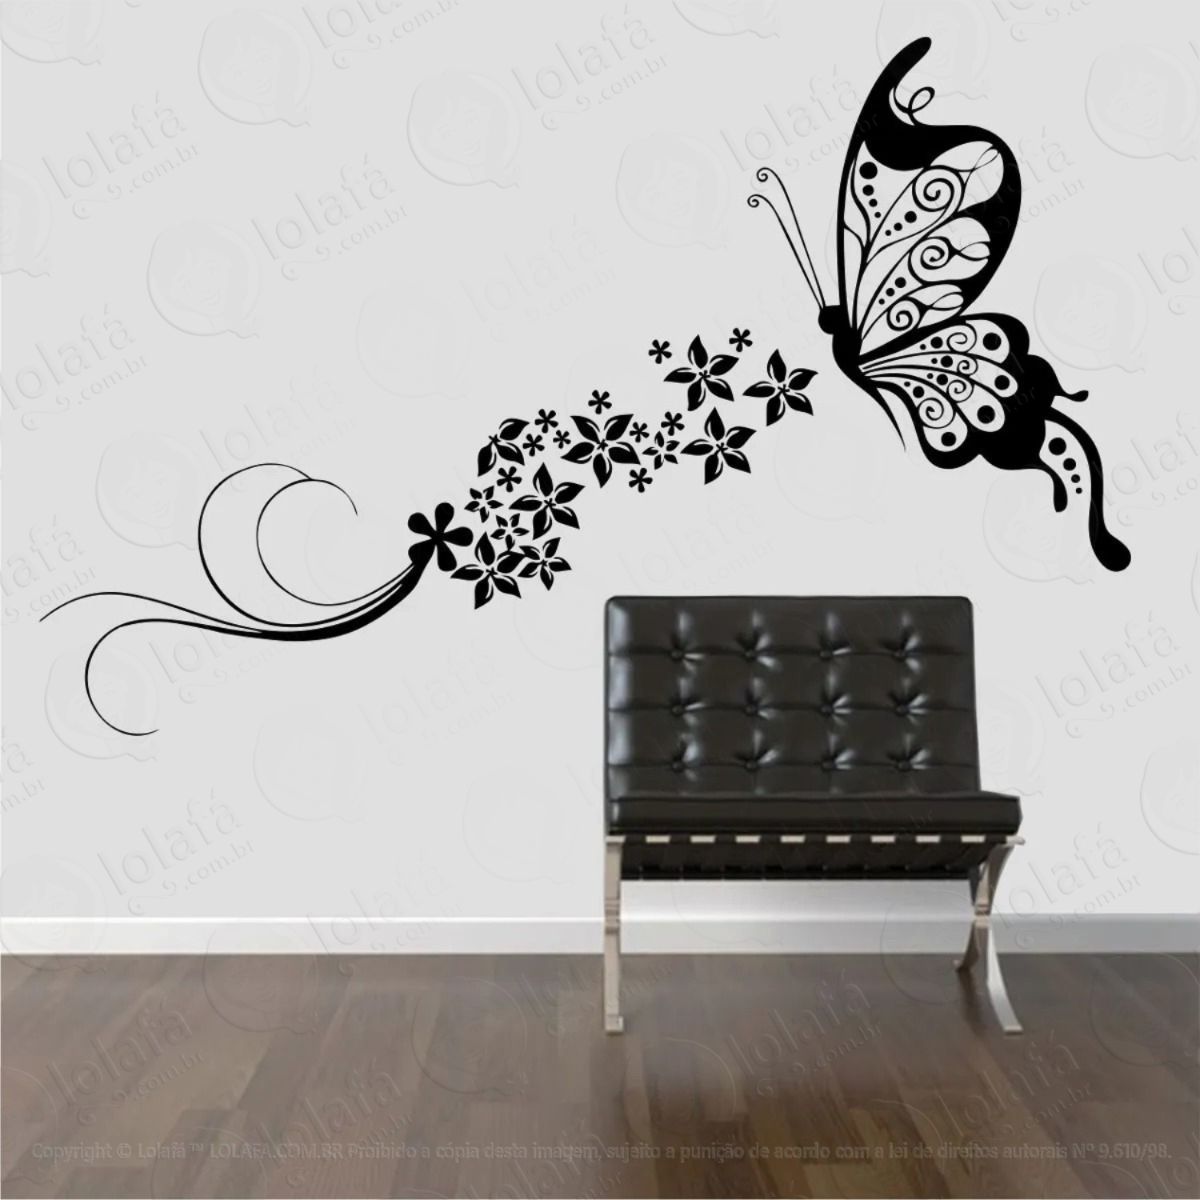 adesivo de parede borboleta floral flores faixa mod:670